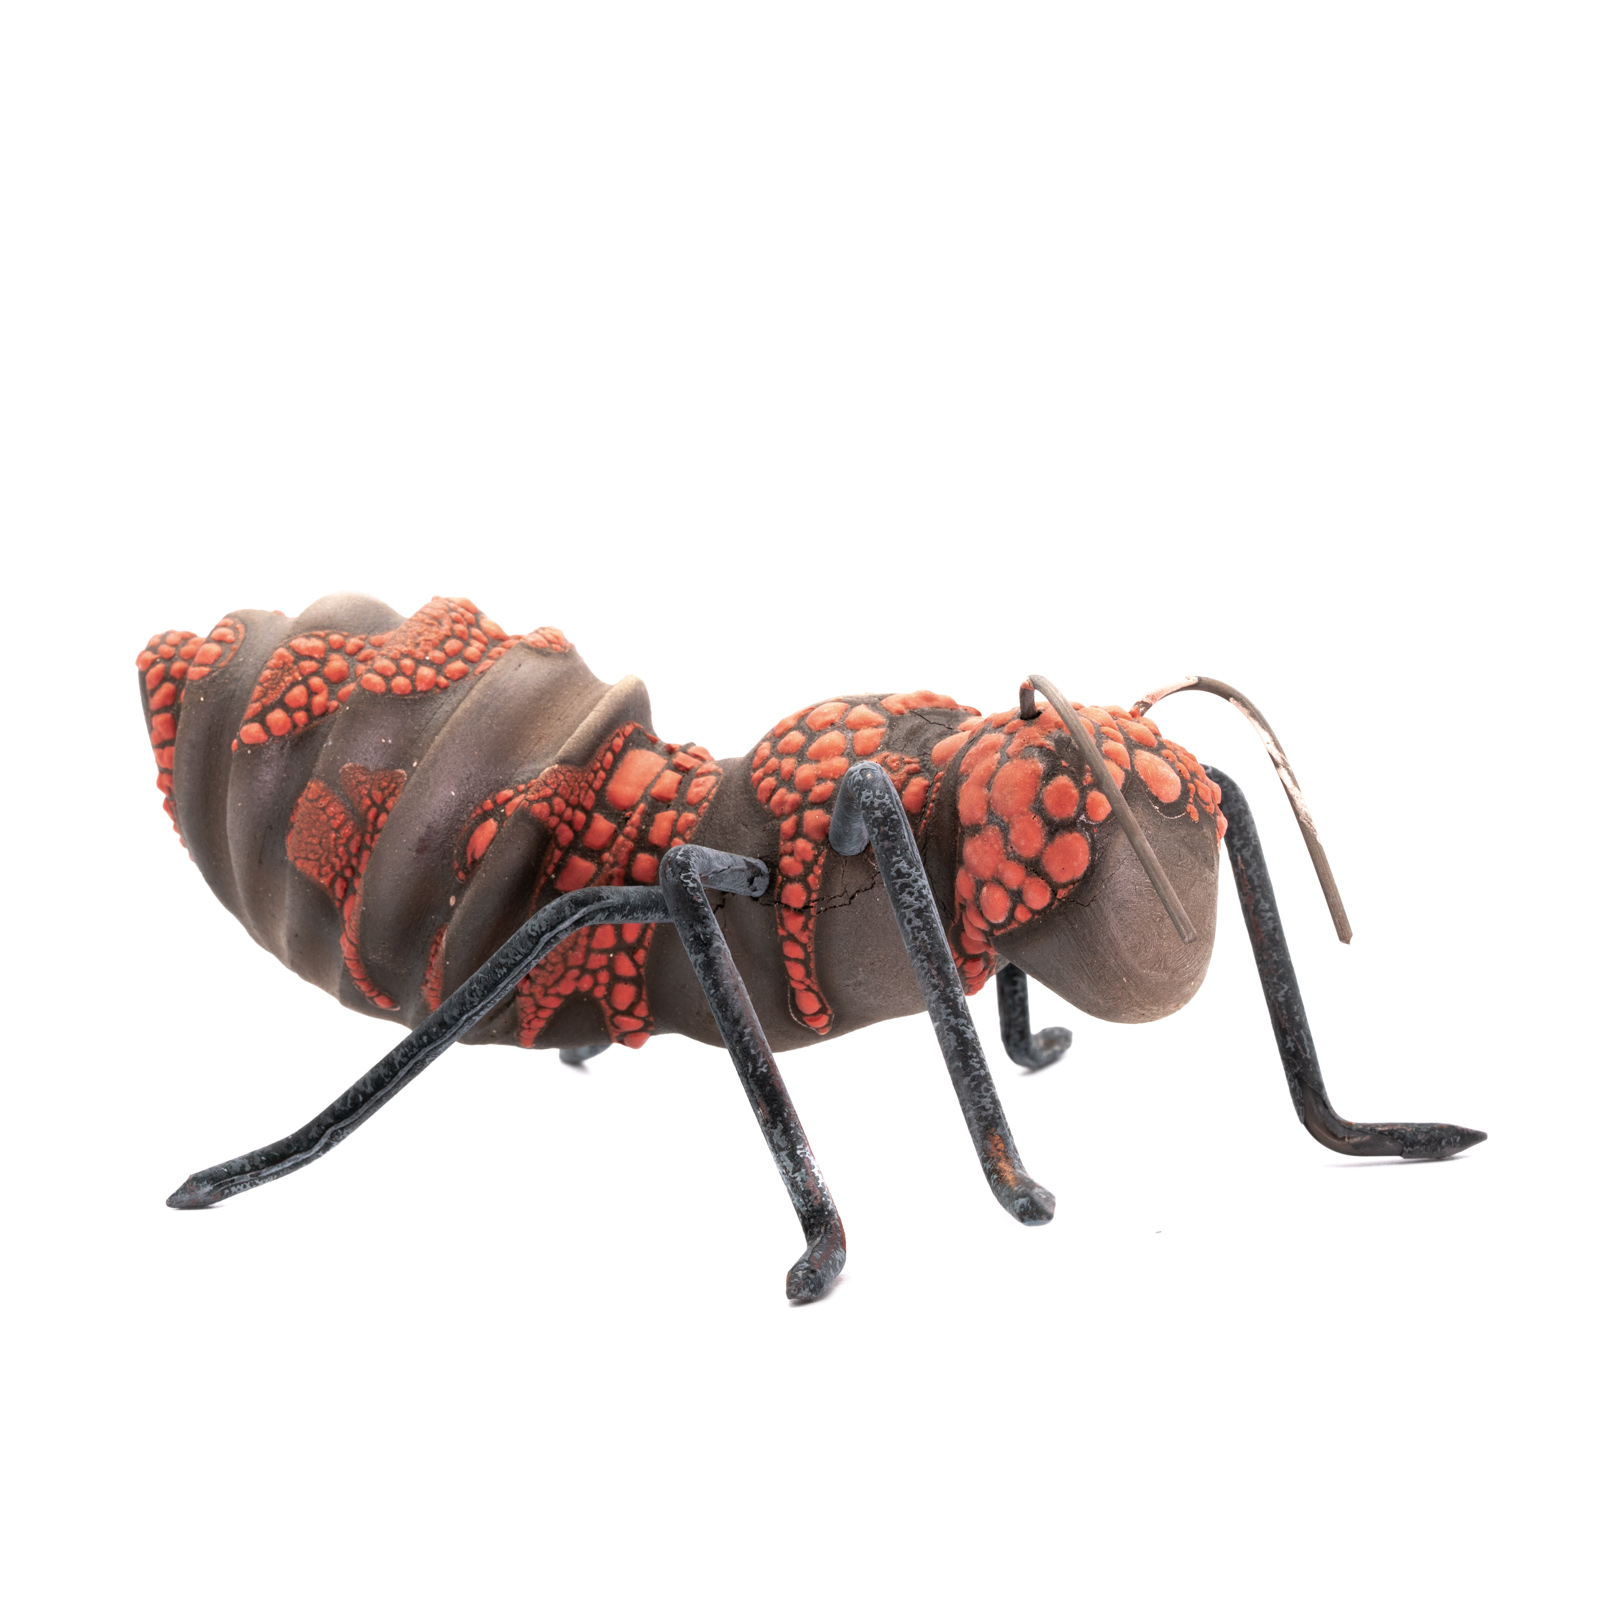 Gartendeko Keramik | Ameise | fleißiges Arbeitstierchen | dunkelbraun/rötlich